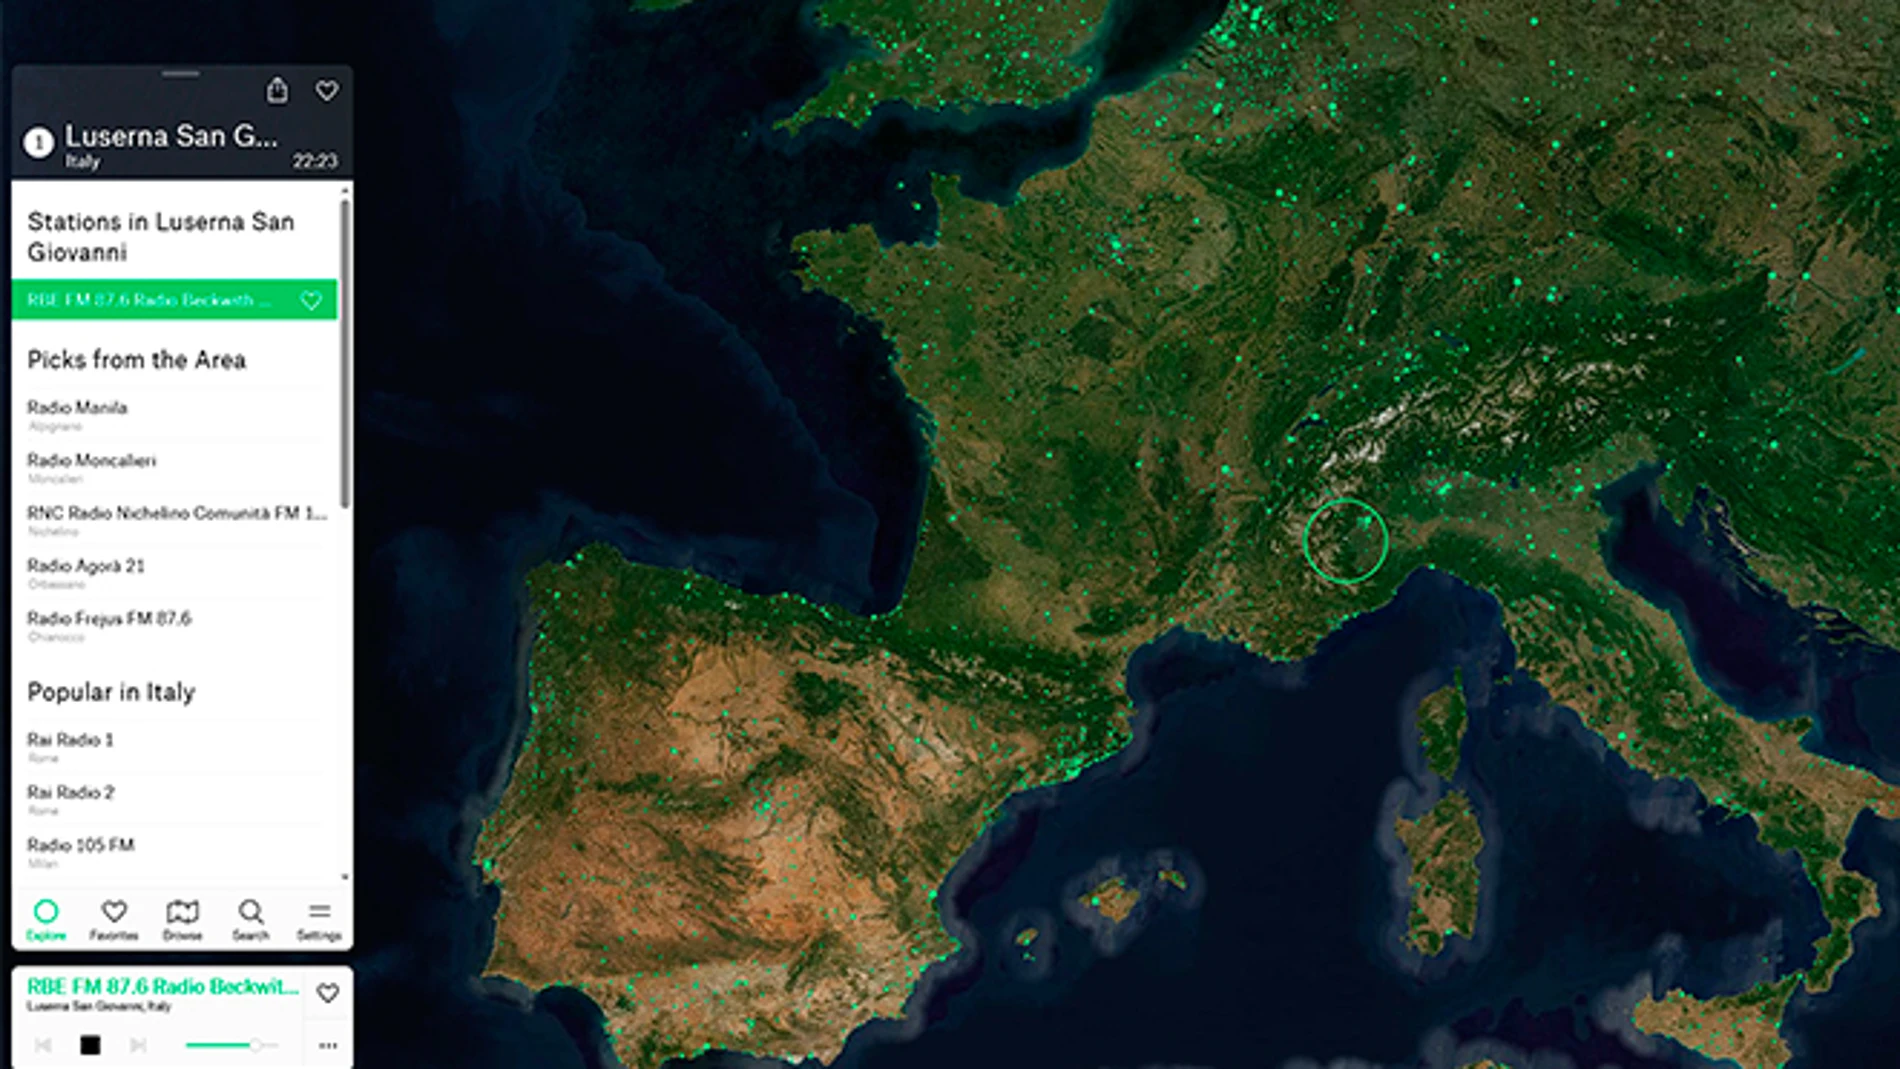 El Google Maps en el que puedes sintonizar cualquier emisora de radio de España y el mundo.